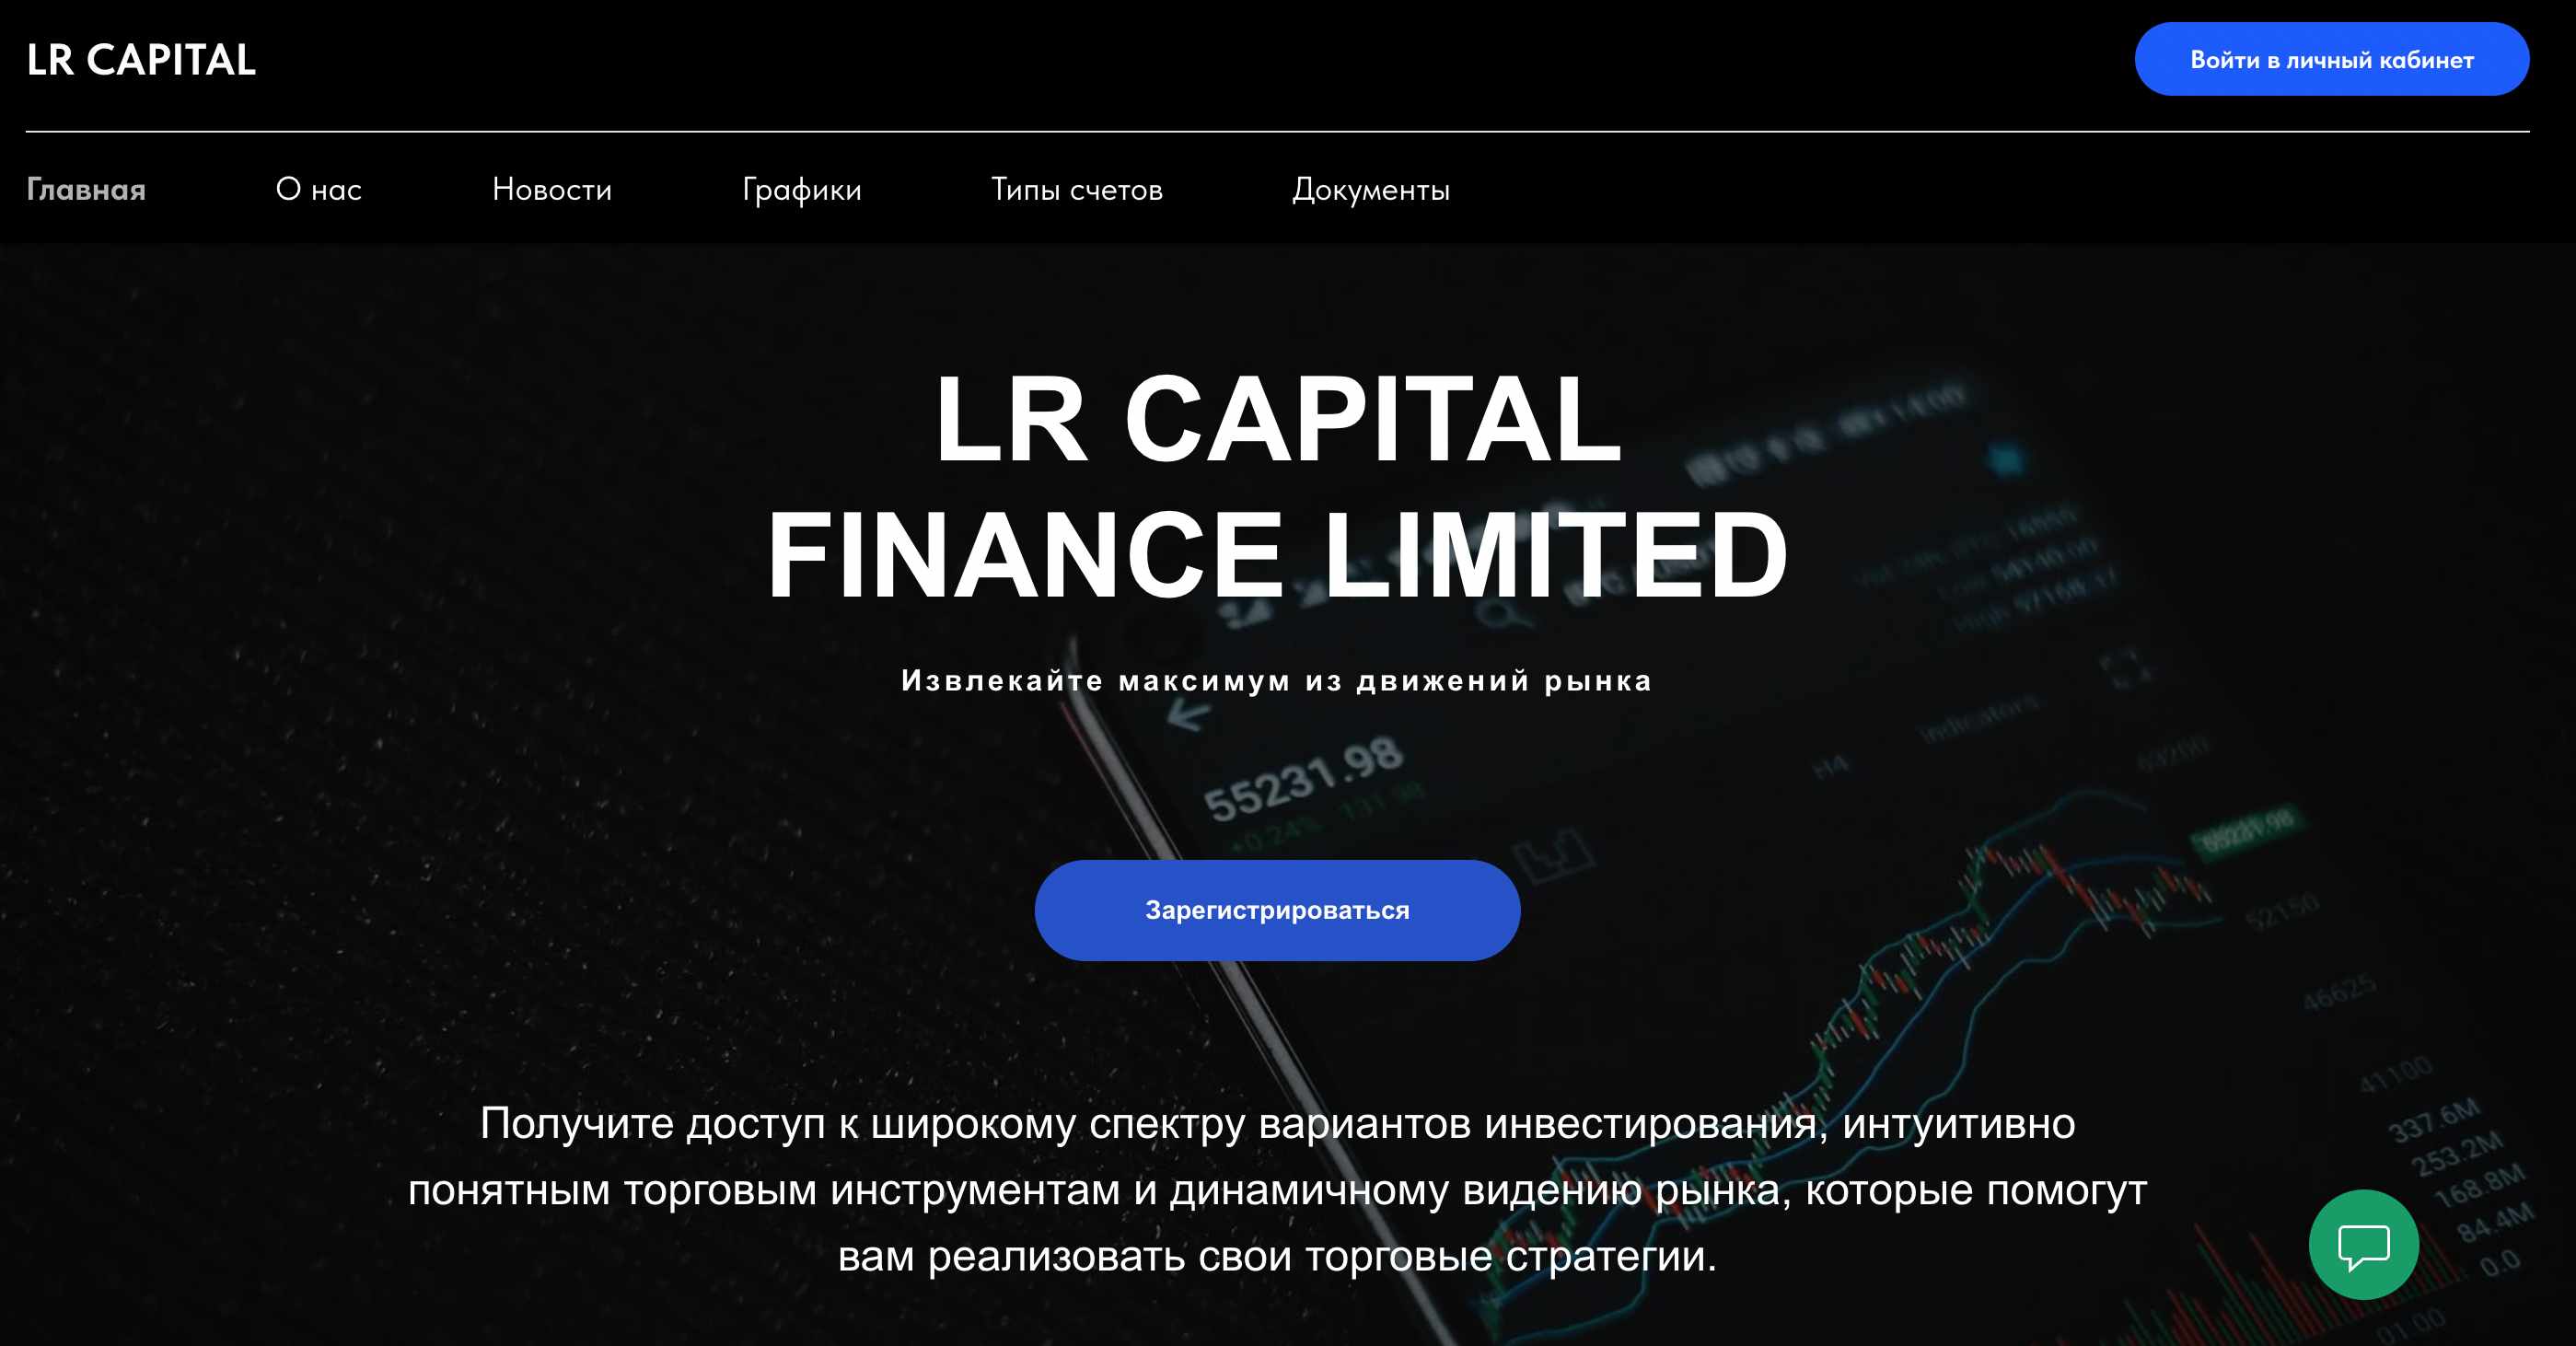 LR Capital — лживый финансовый посредник